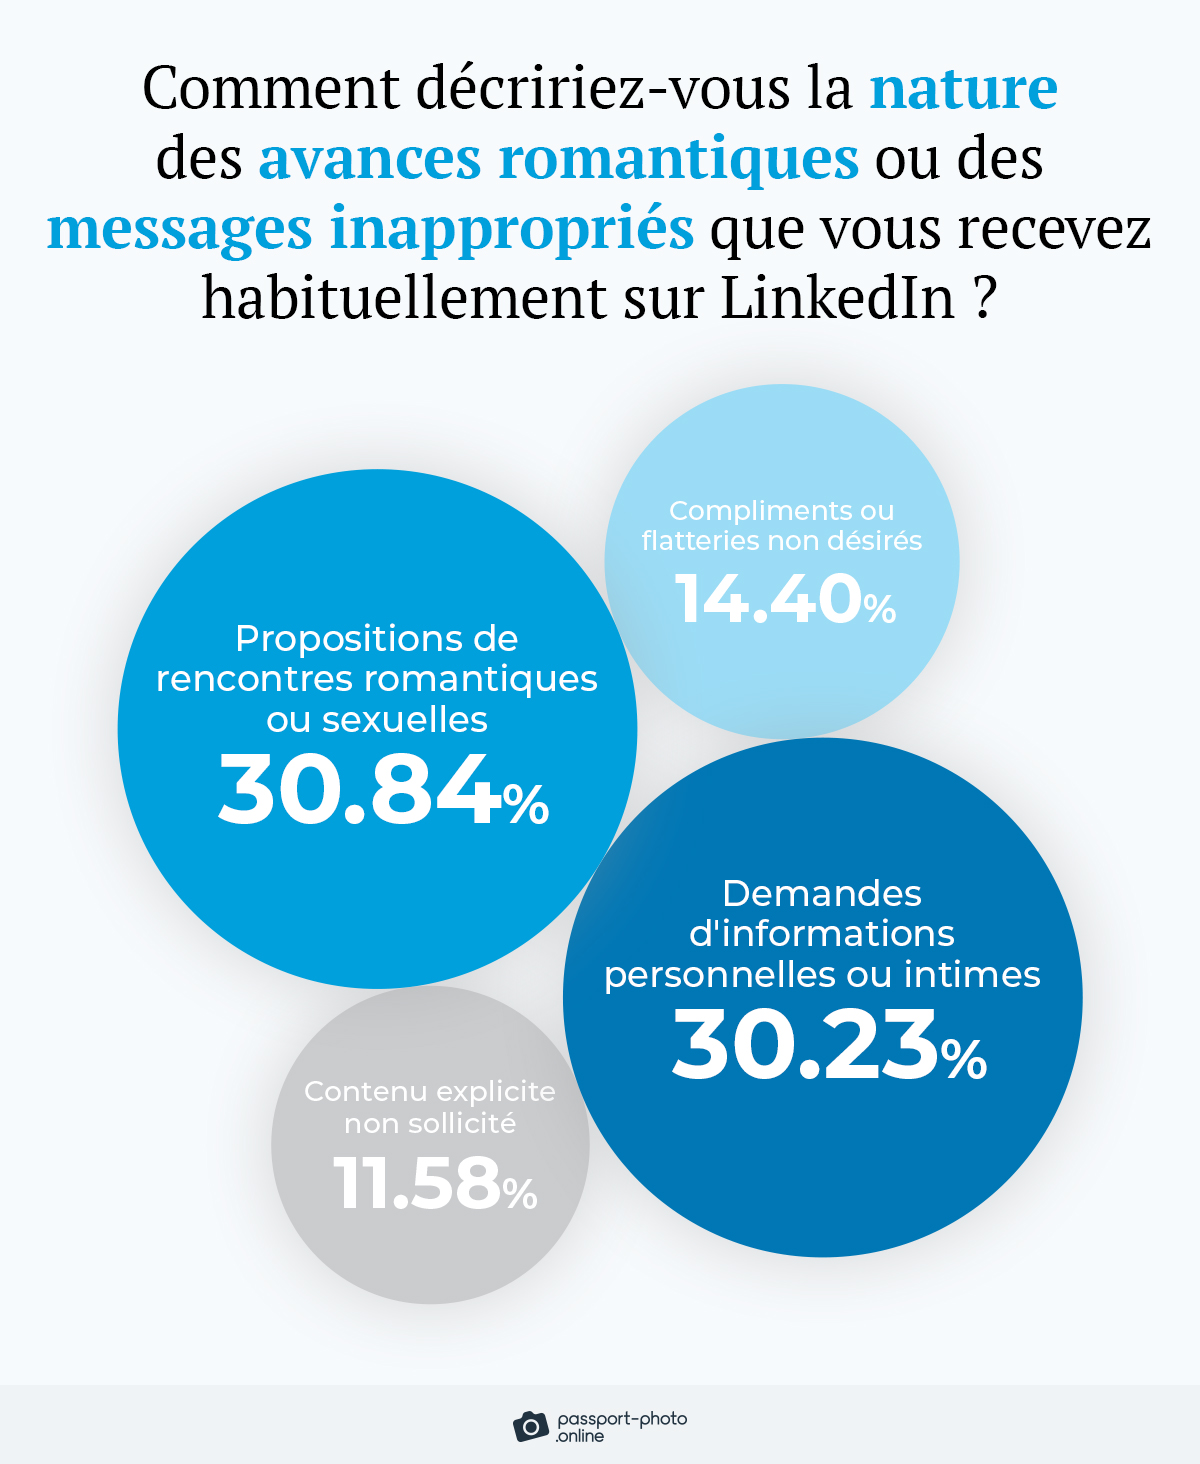 les types d'avances romantiques ou de messages inappropriés reçus sur LinkedIn